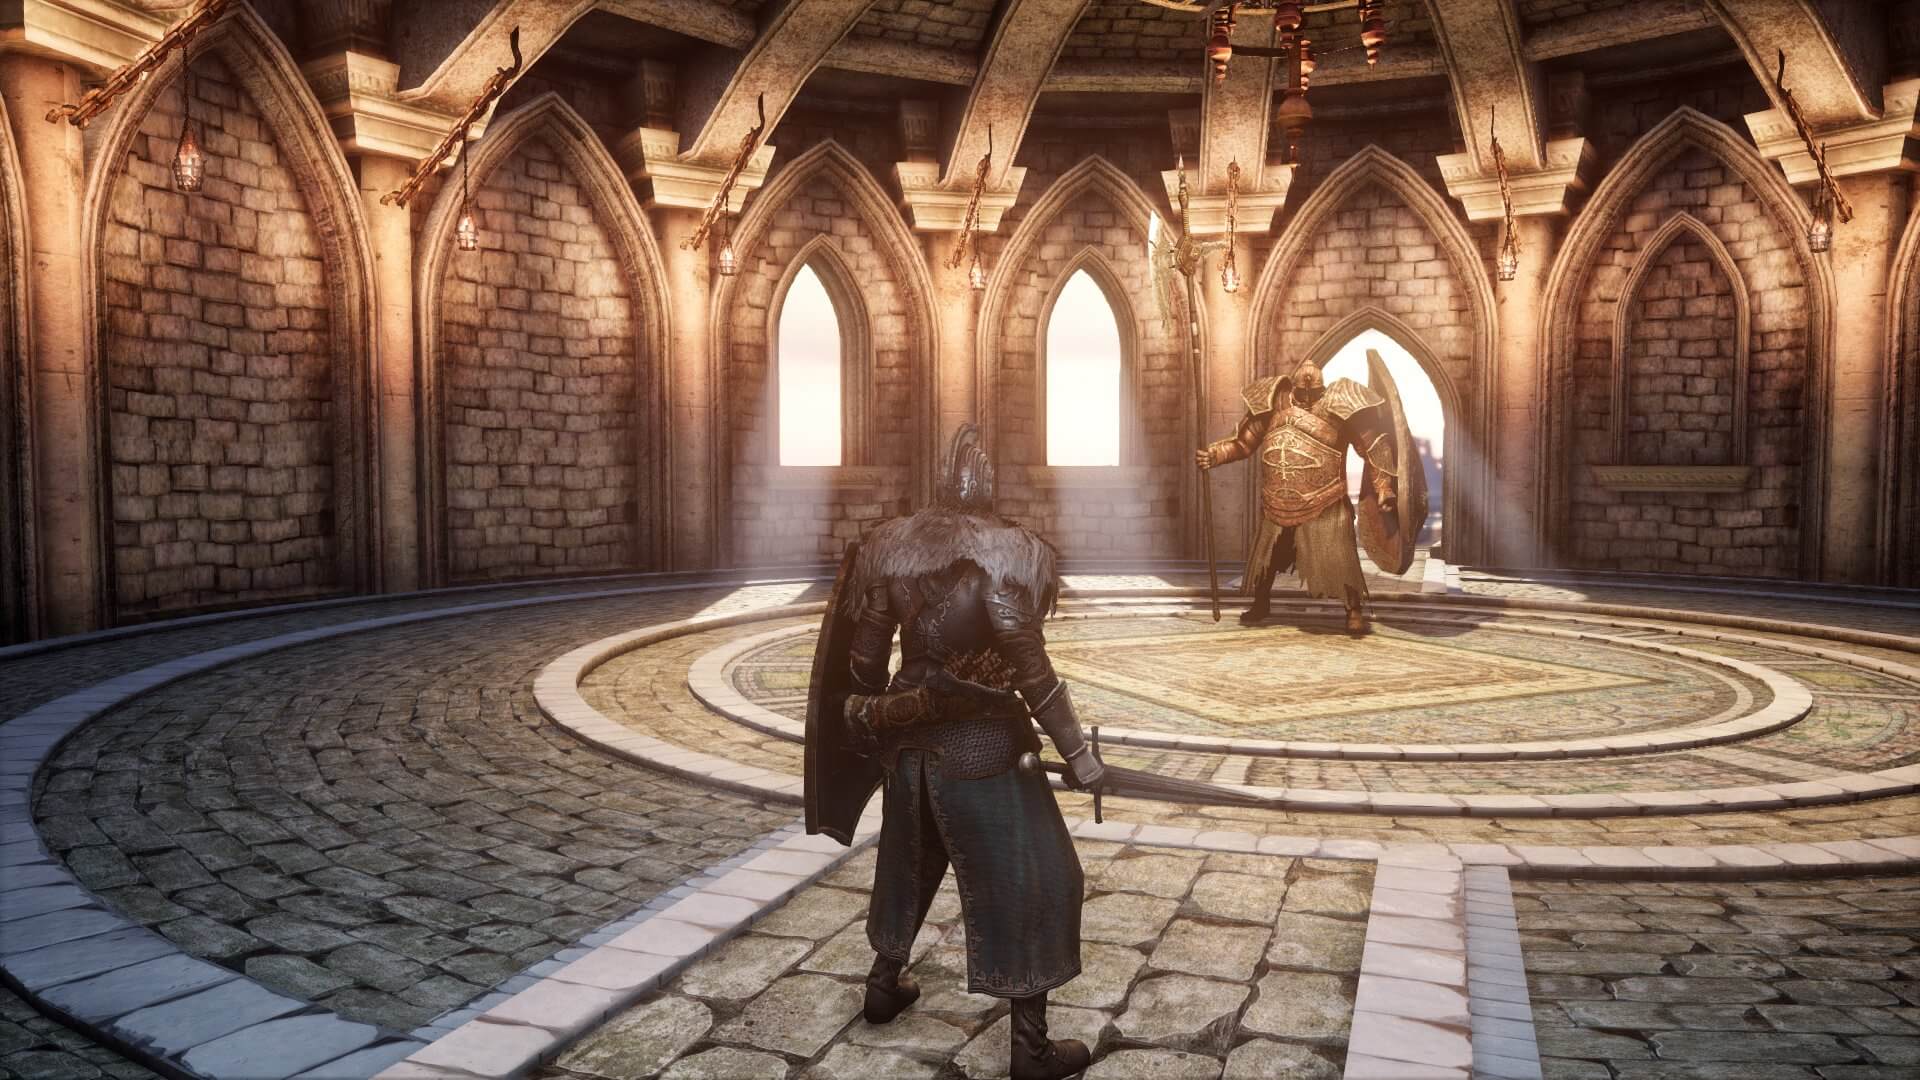 Lista traz os melhores mods para a versão de Dark Souls 2 no PC